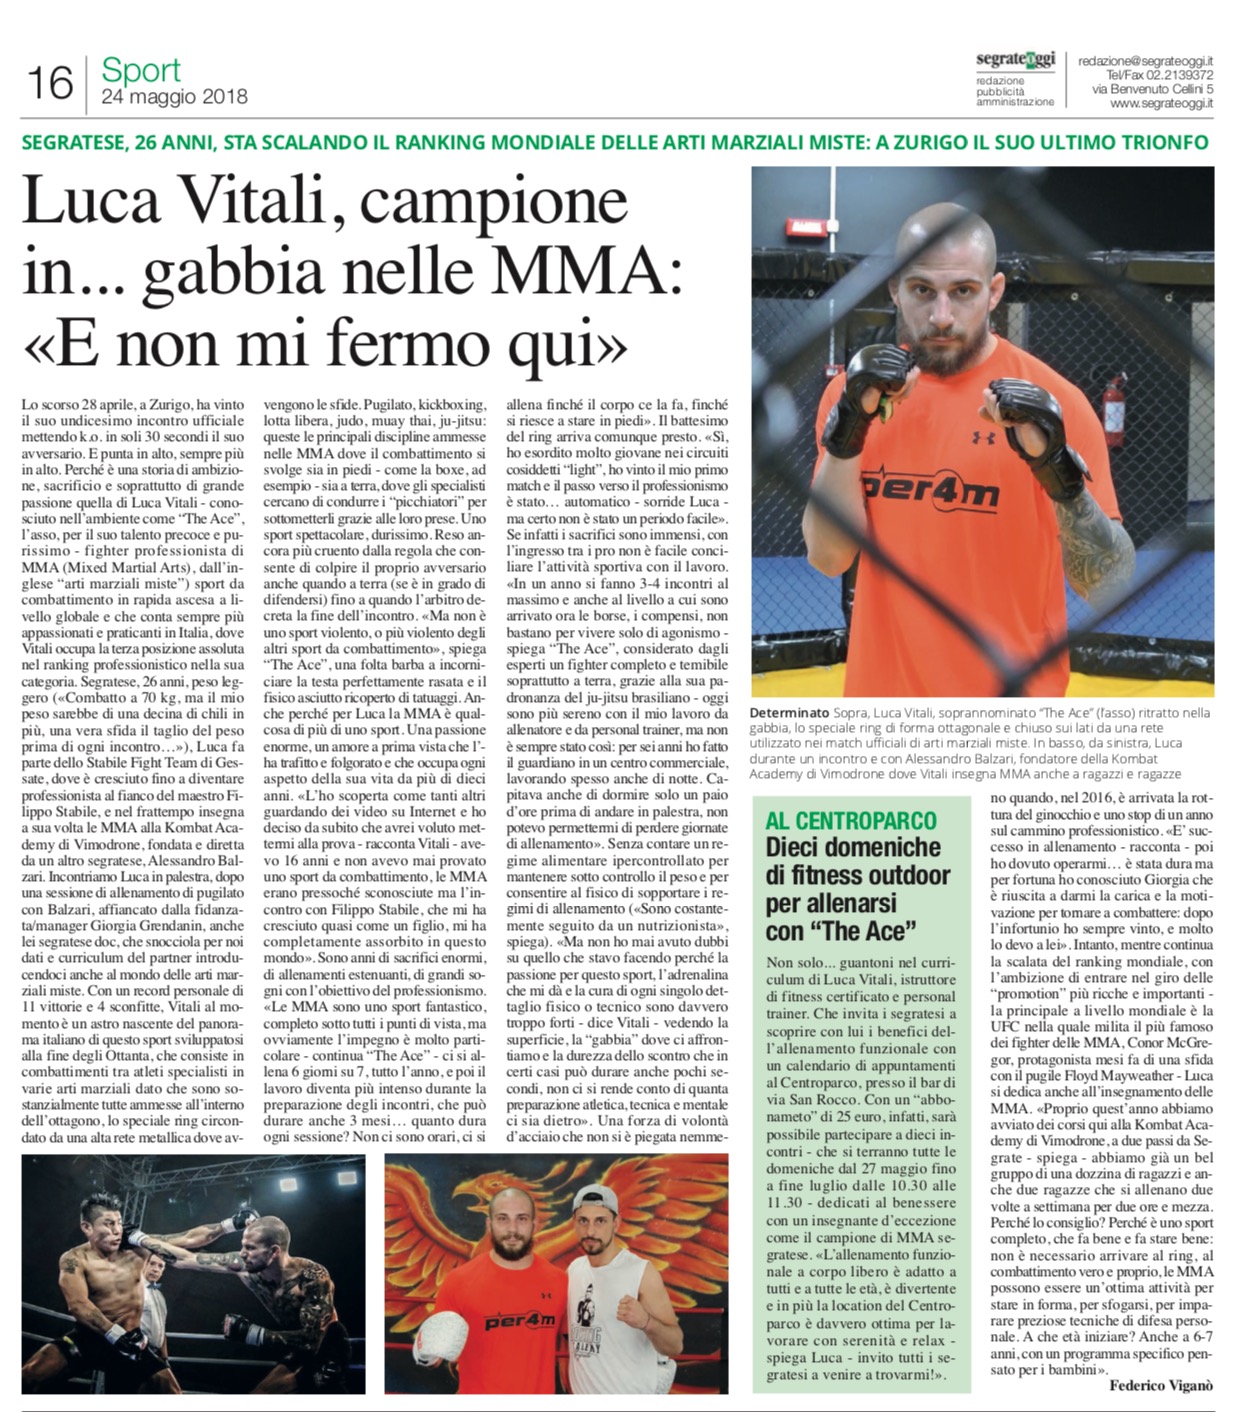 Scopri di più sull'articolo Il nostro super Luca Vitali, che campione!